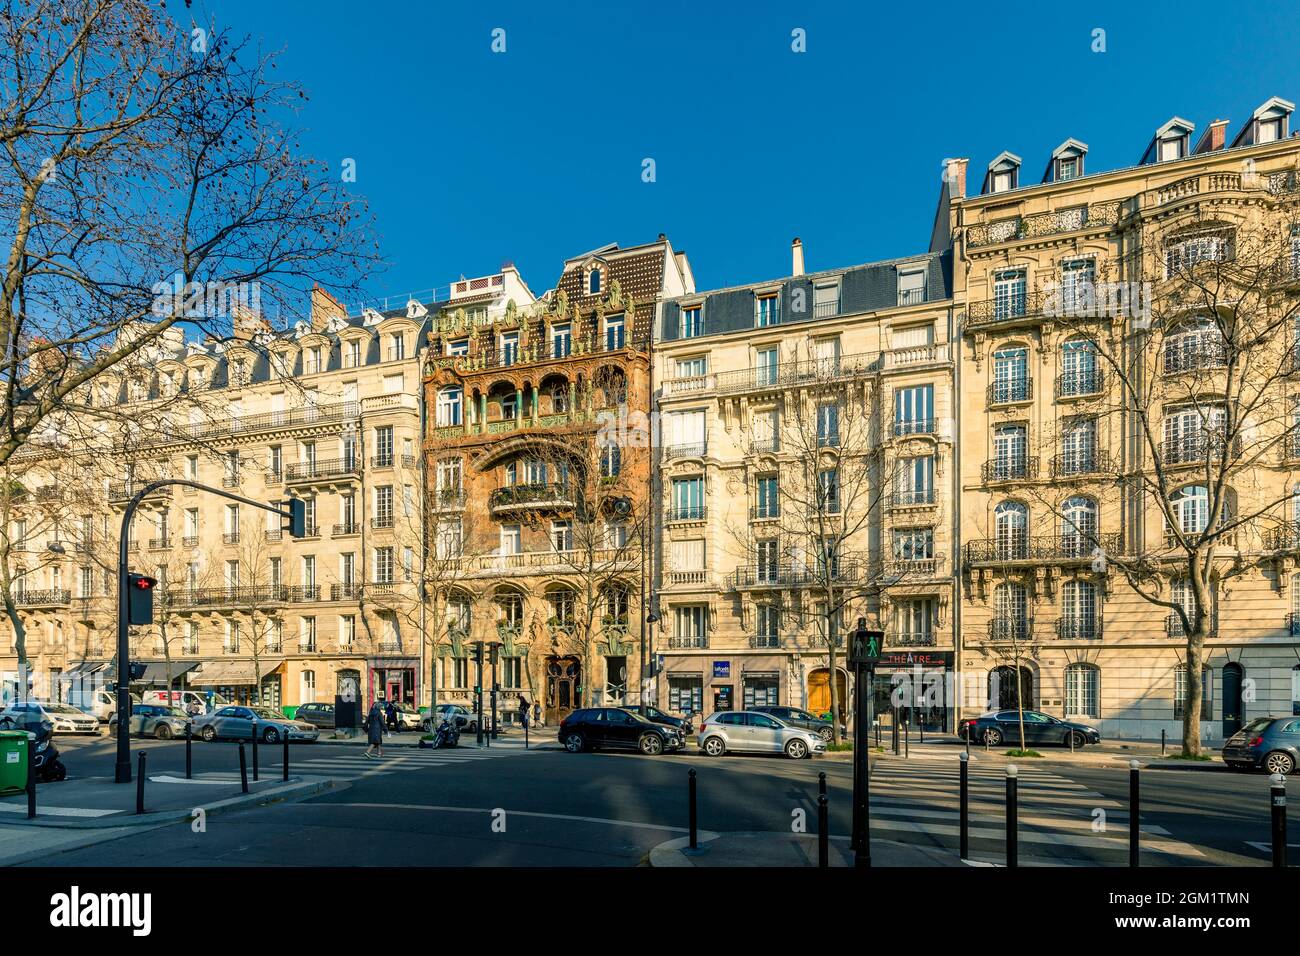 Paris, France - March 8, 2021: The magnificent art nouveau Lavirotte building on Rapp Avenue in Paris Stock Photo